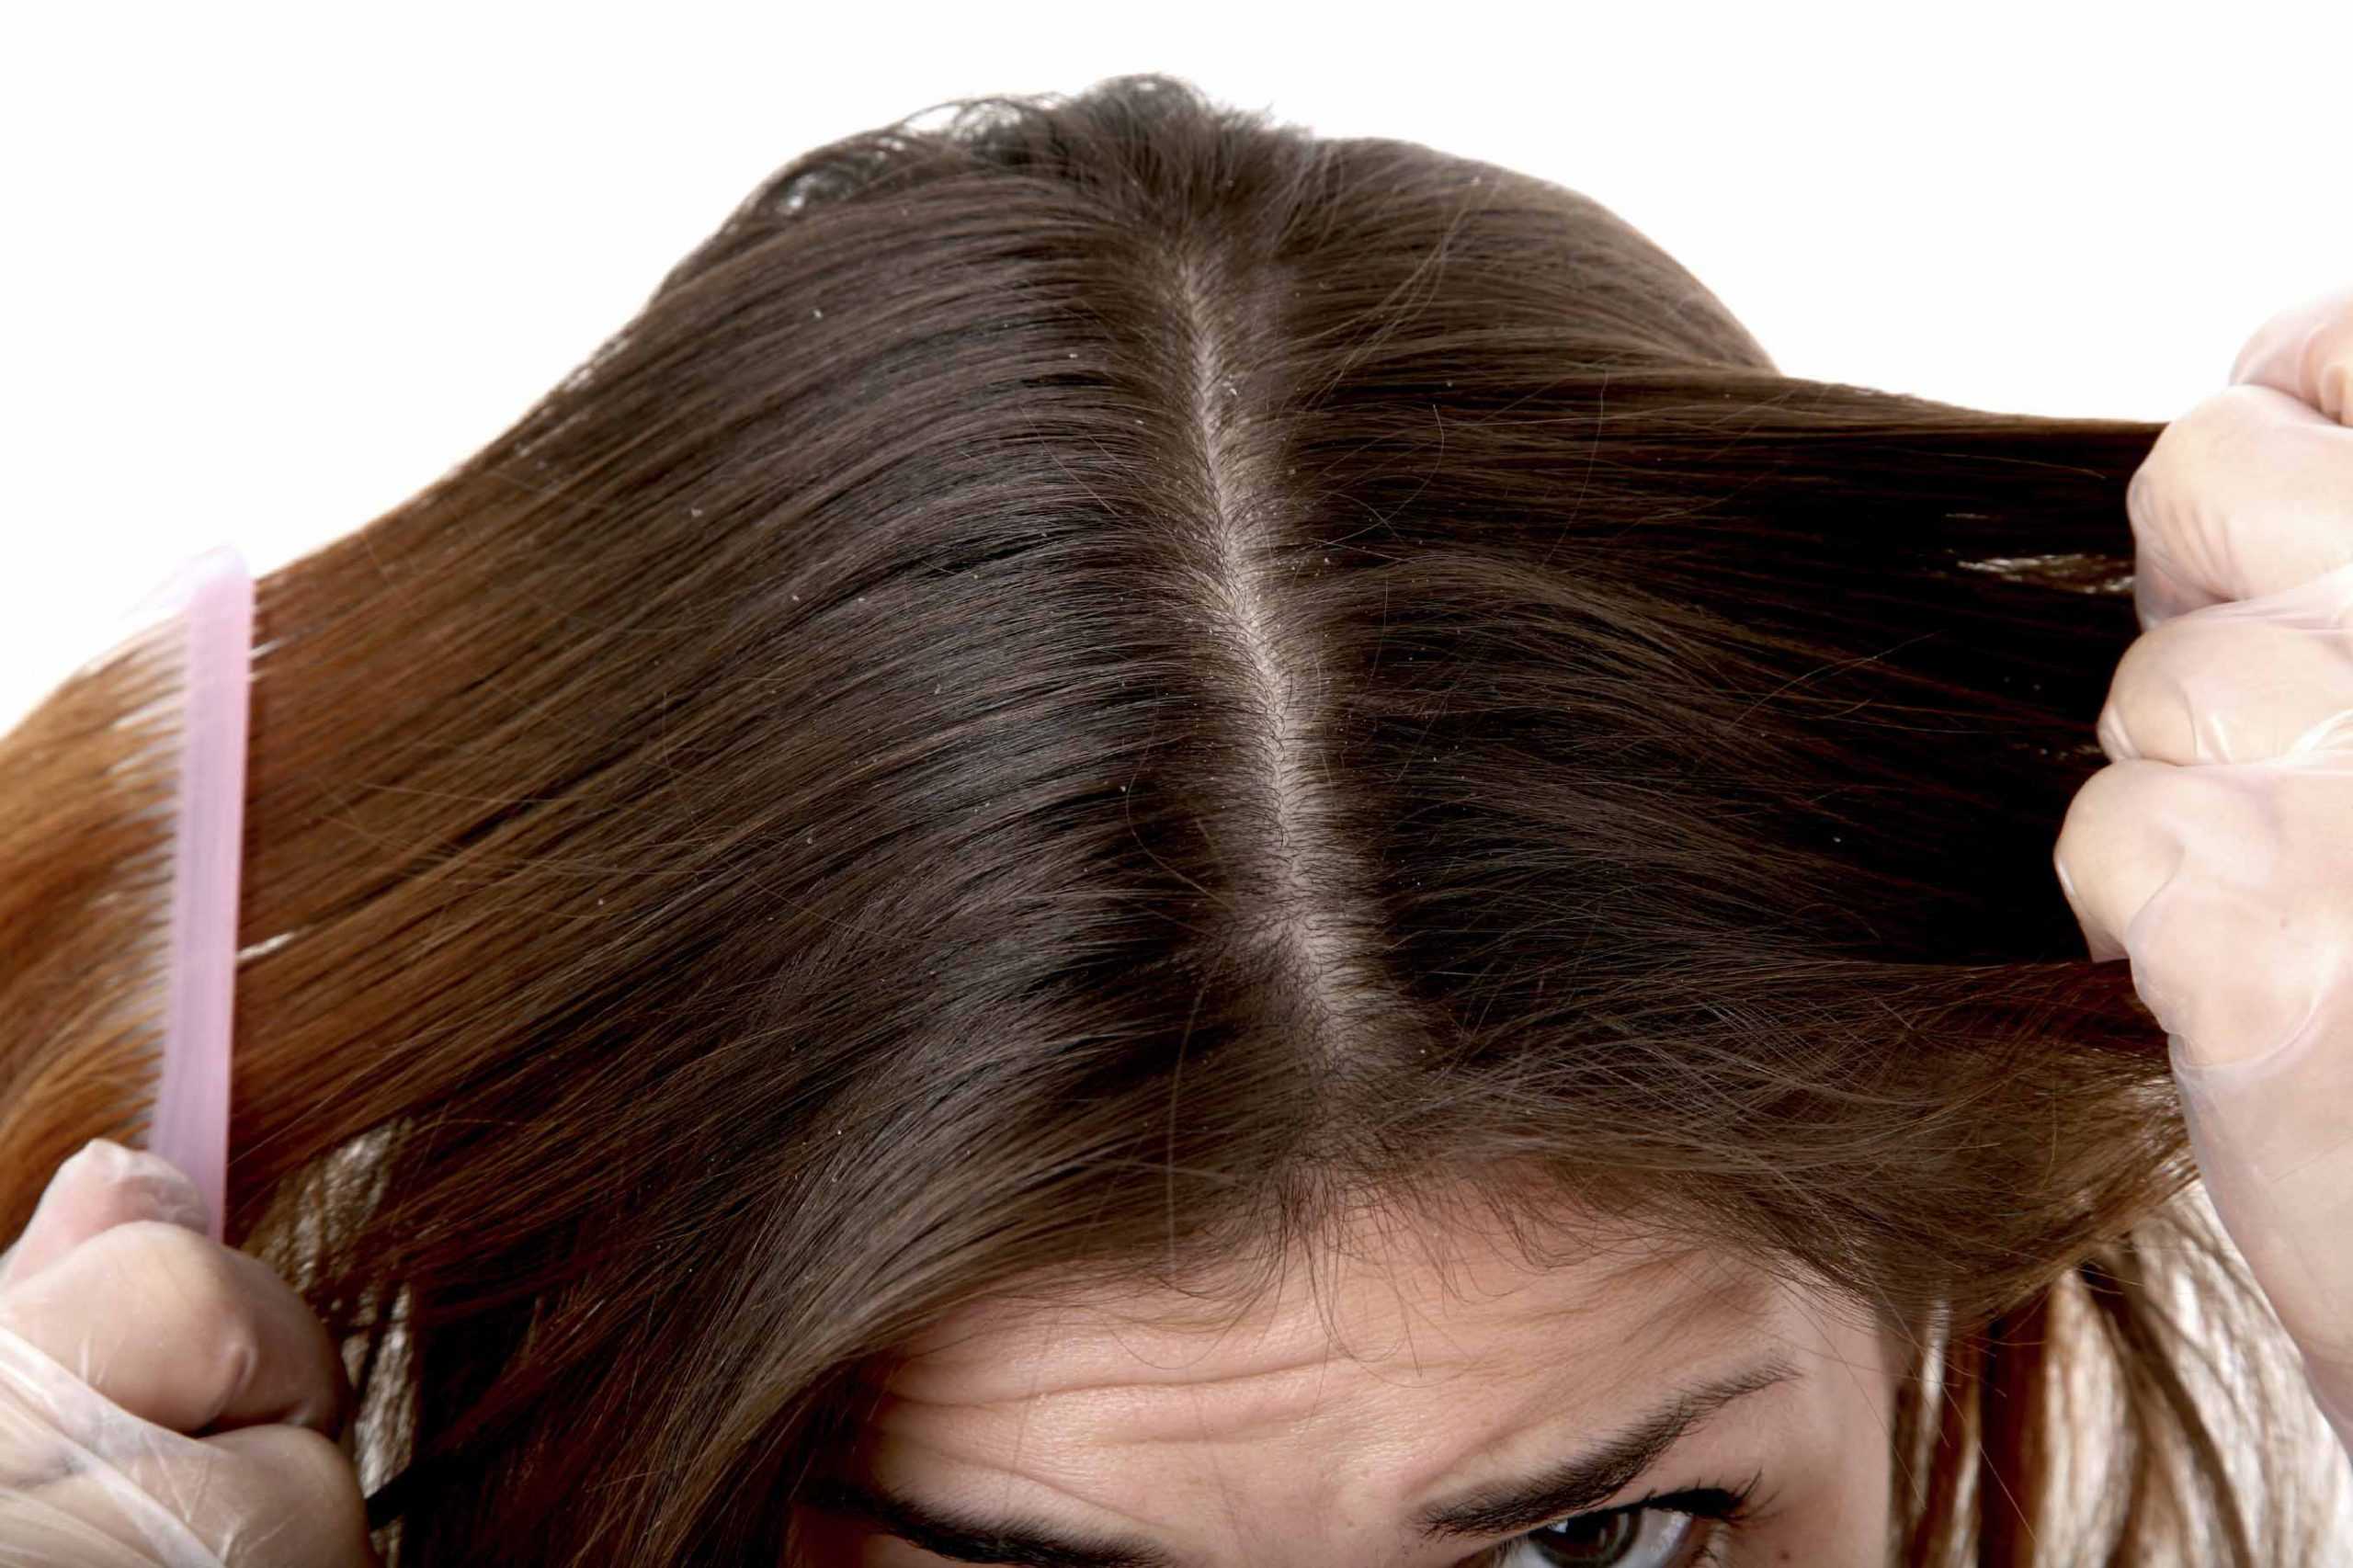 Плохое состояние волос и кожи что делать